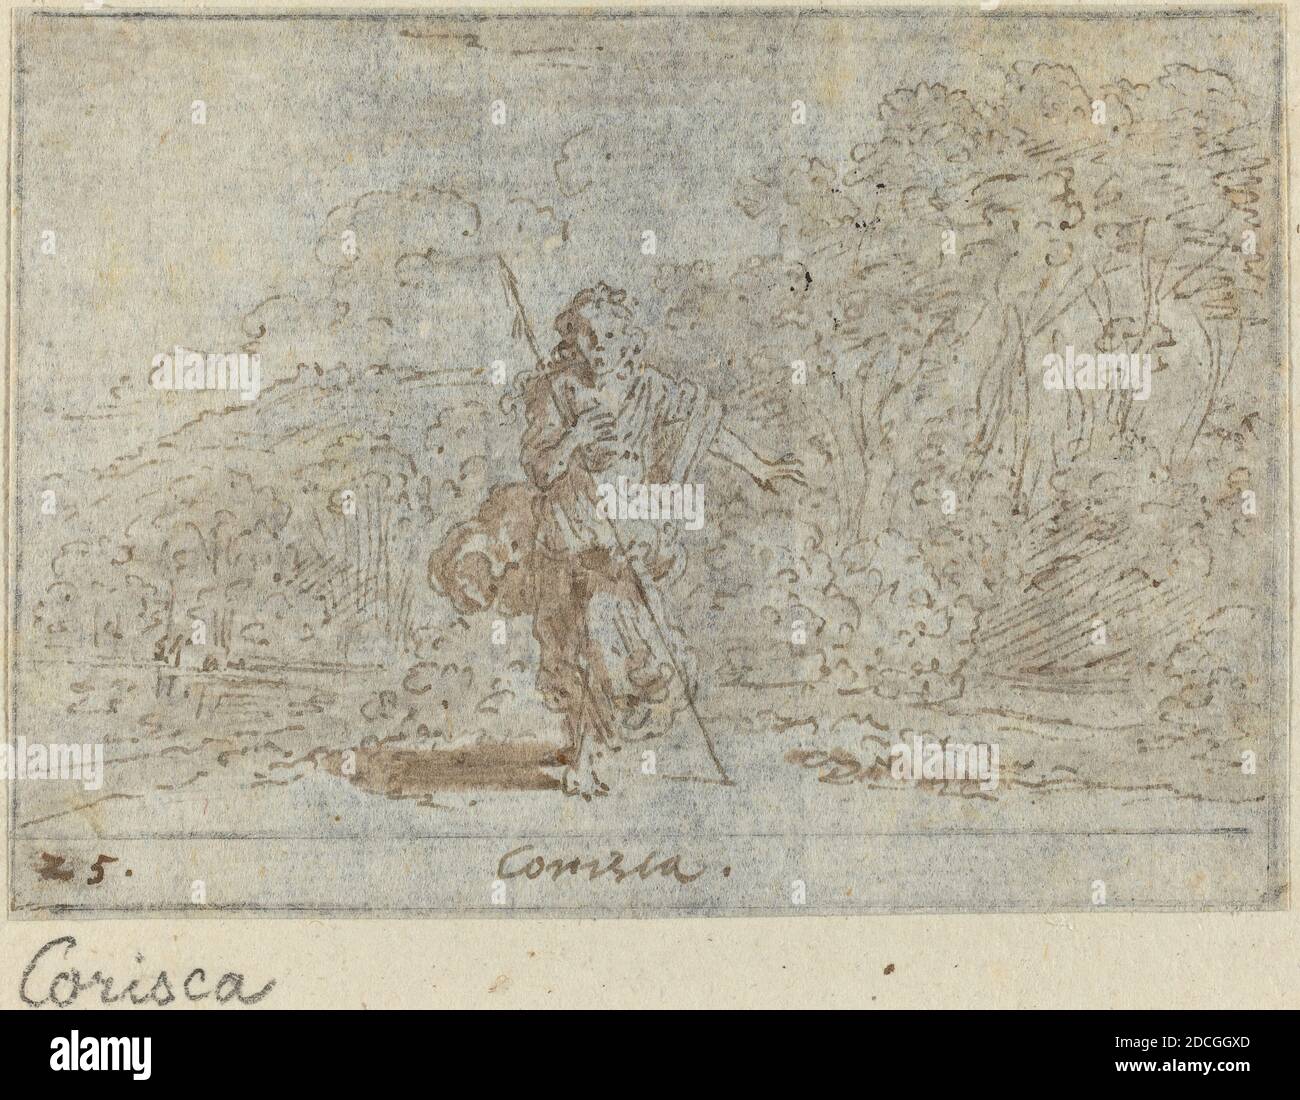 Johann Wilhelm Baur, (artiste), allemand, 1607 - 1641, Corisca, G.B. « il PASTOR fido » de Guarini, (série), 1640, stylo et encre brune avec lavage brun sur papier ponté, total : 6.4 x 9.1 cm (2 1/2 x 3 9/16 po Banque D'Images